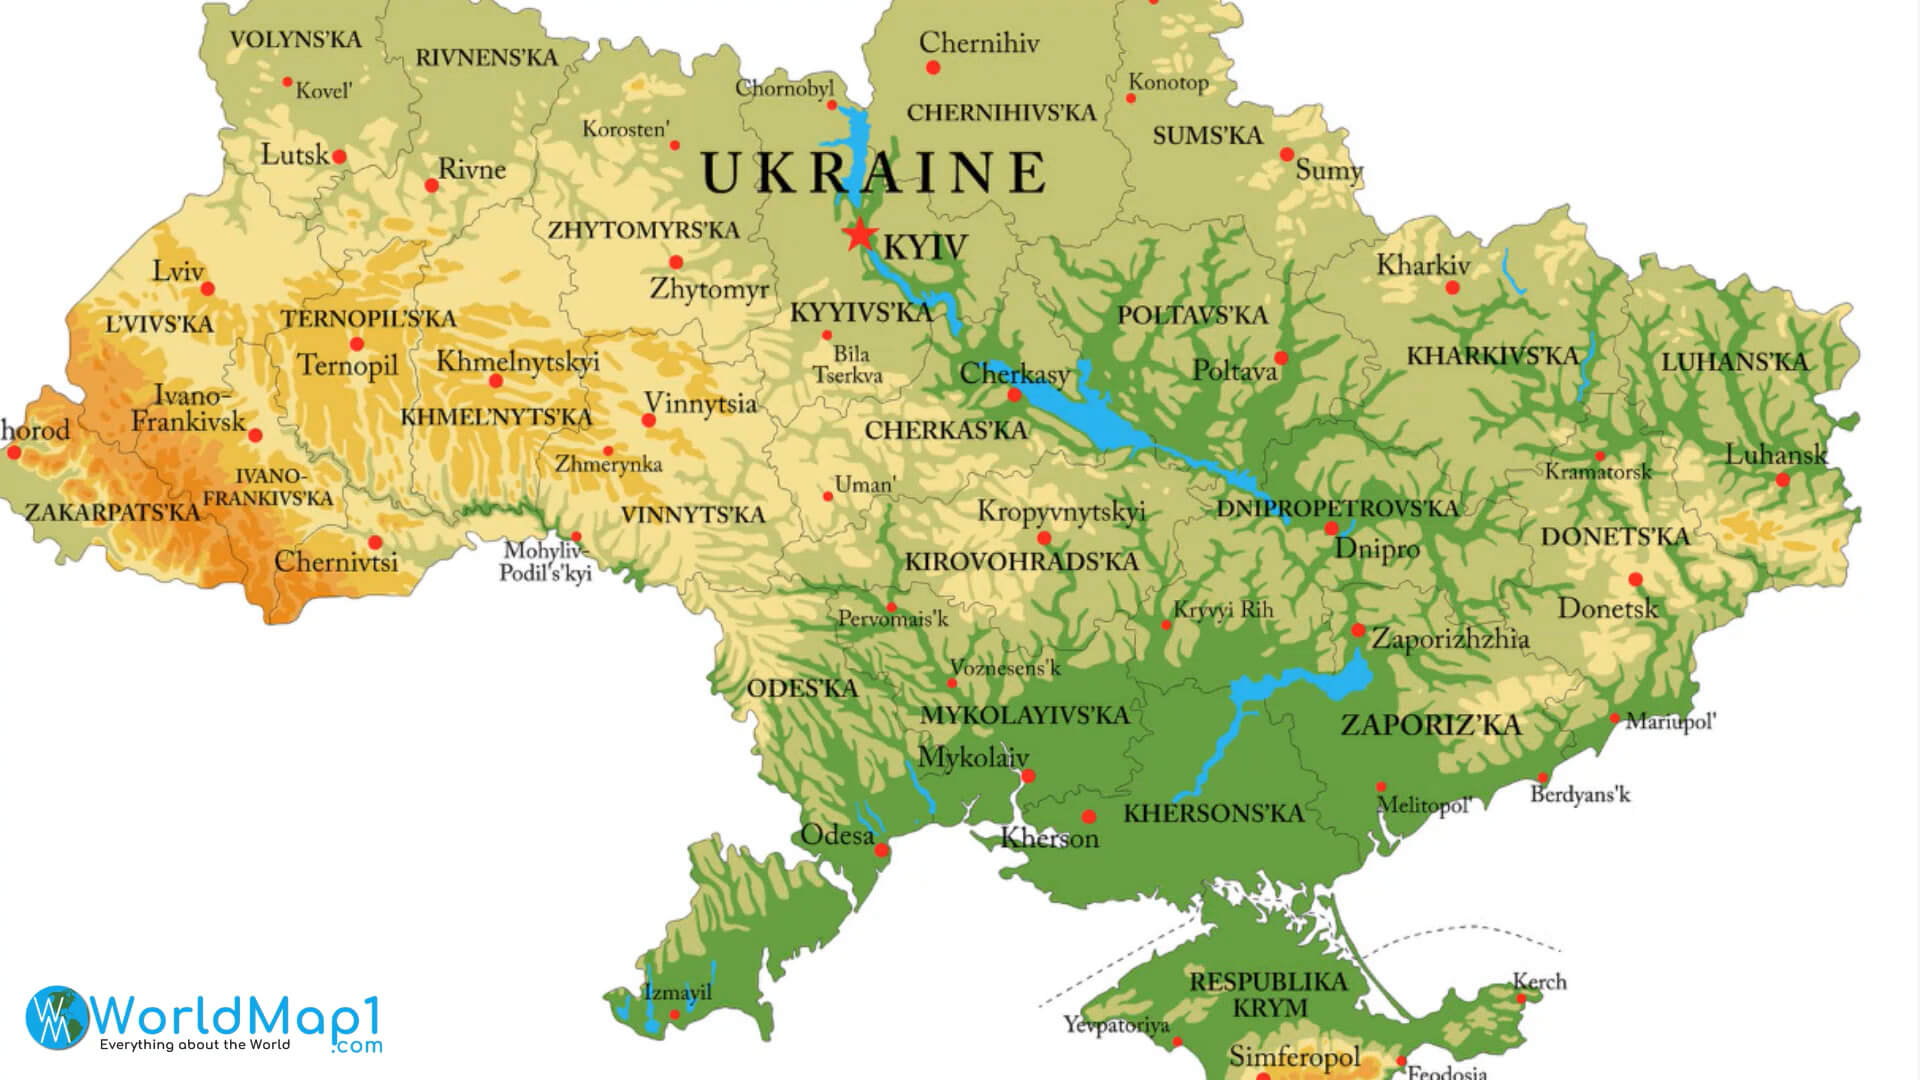 Where is Donetsk in Ukraine